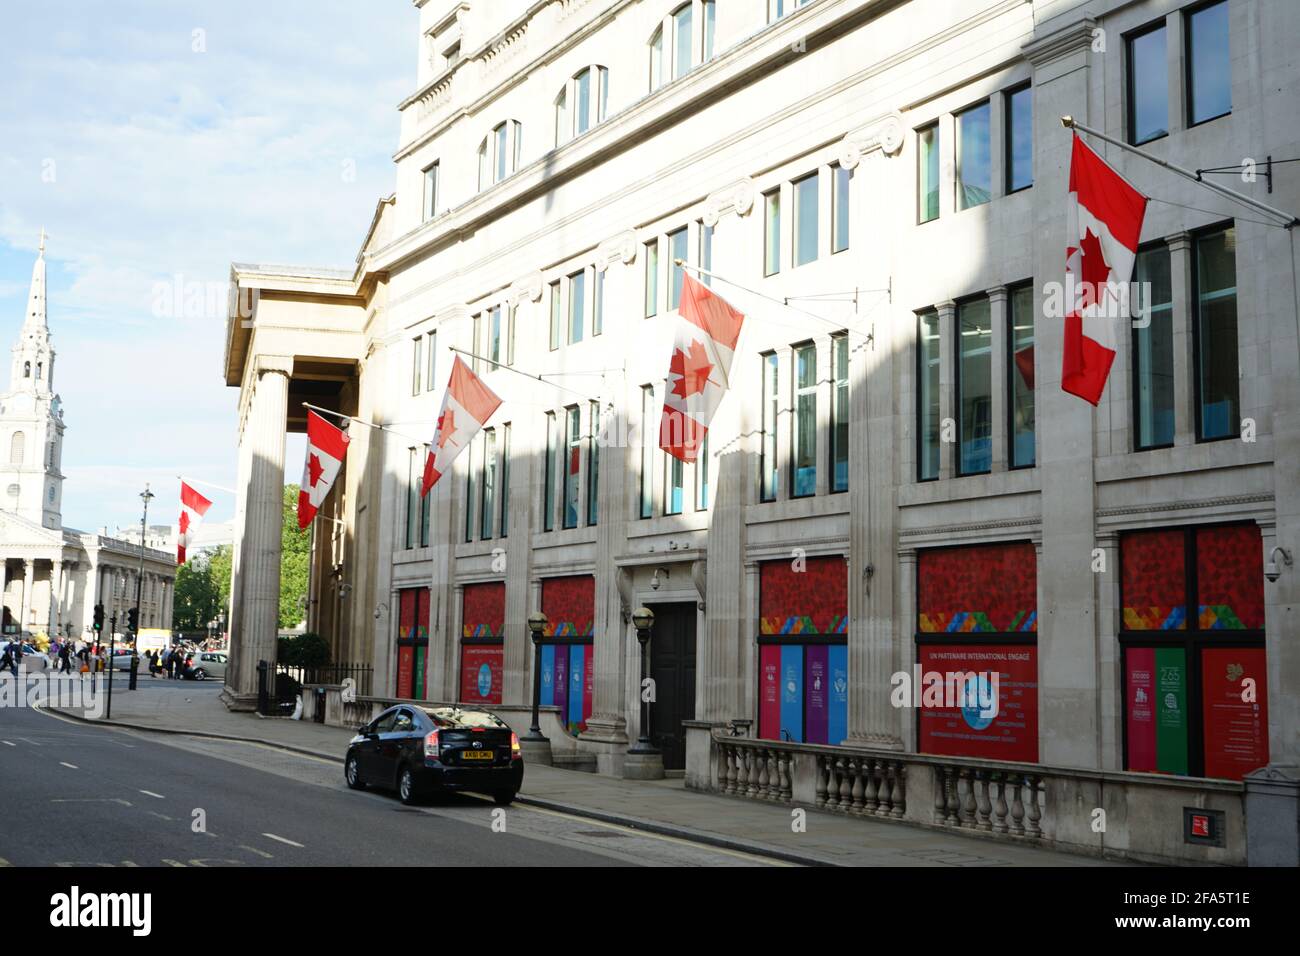 Haut-commissariat du Canada sur le Pall Mall à Trafalgar Square, Londres, Angleterre, Royaume-Uni Banque D'Images